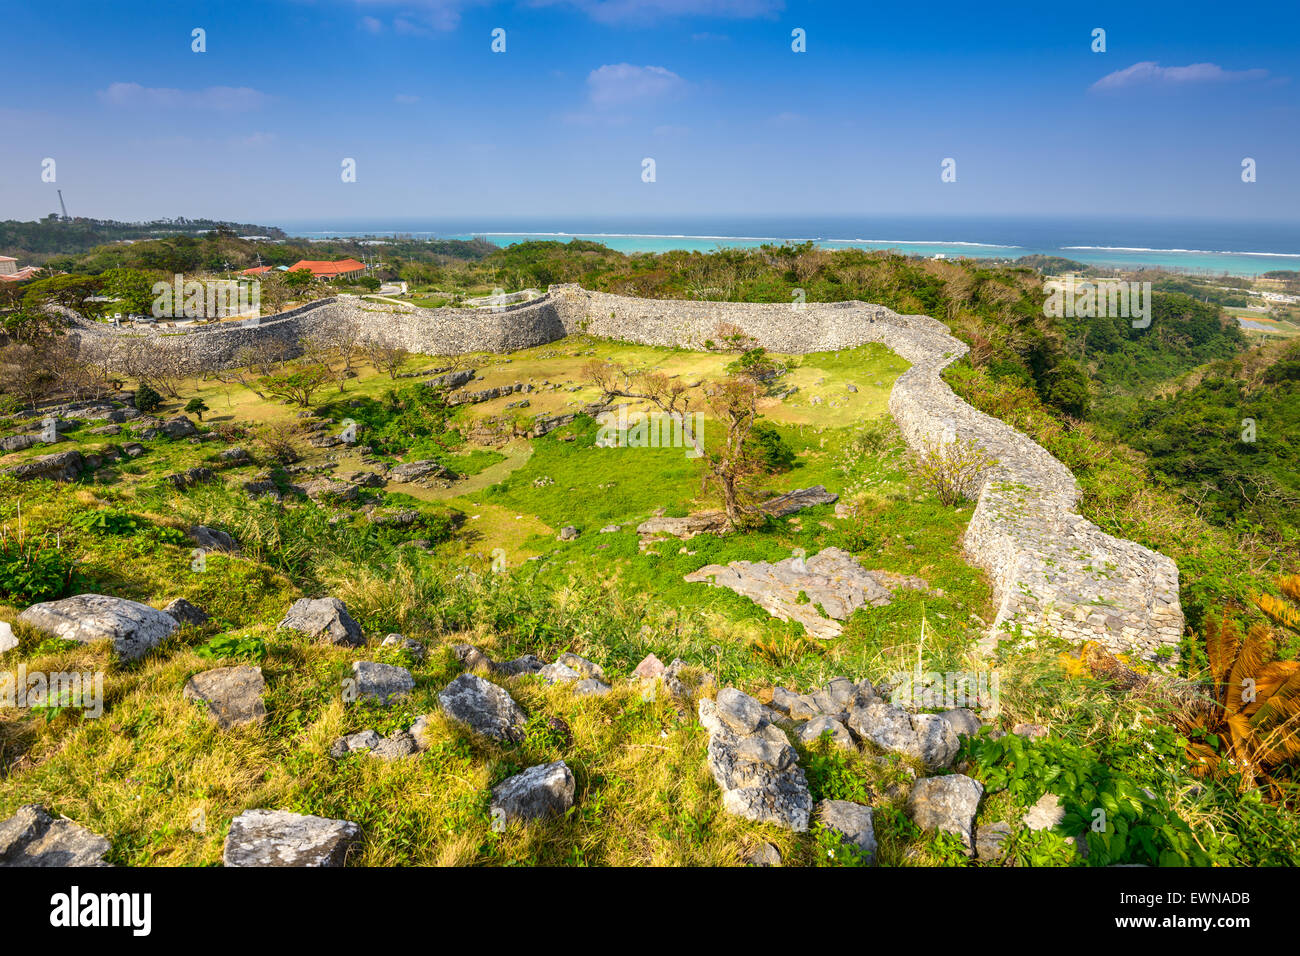 Okinawa, Japan at Nakagusuku Castle ruins. Stock Photo